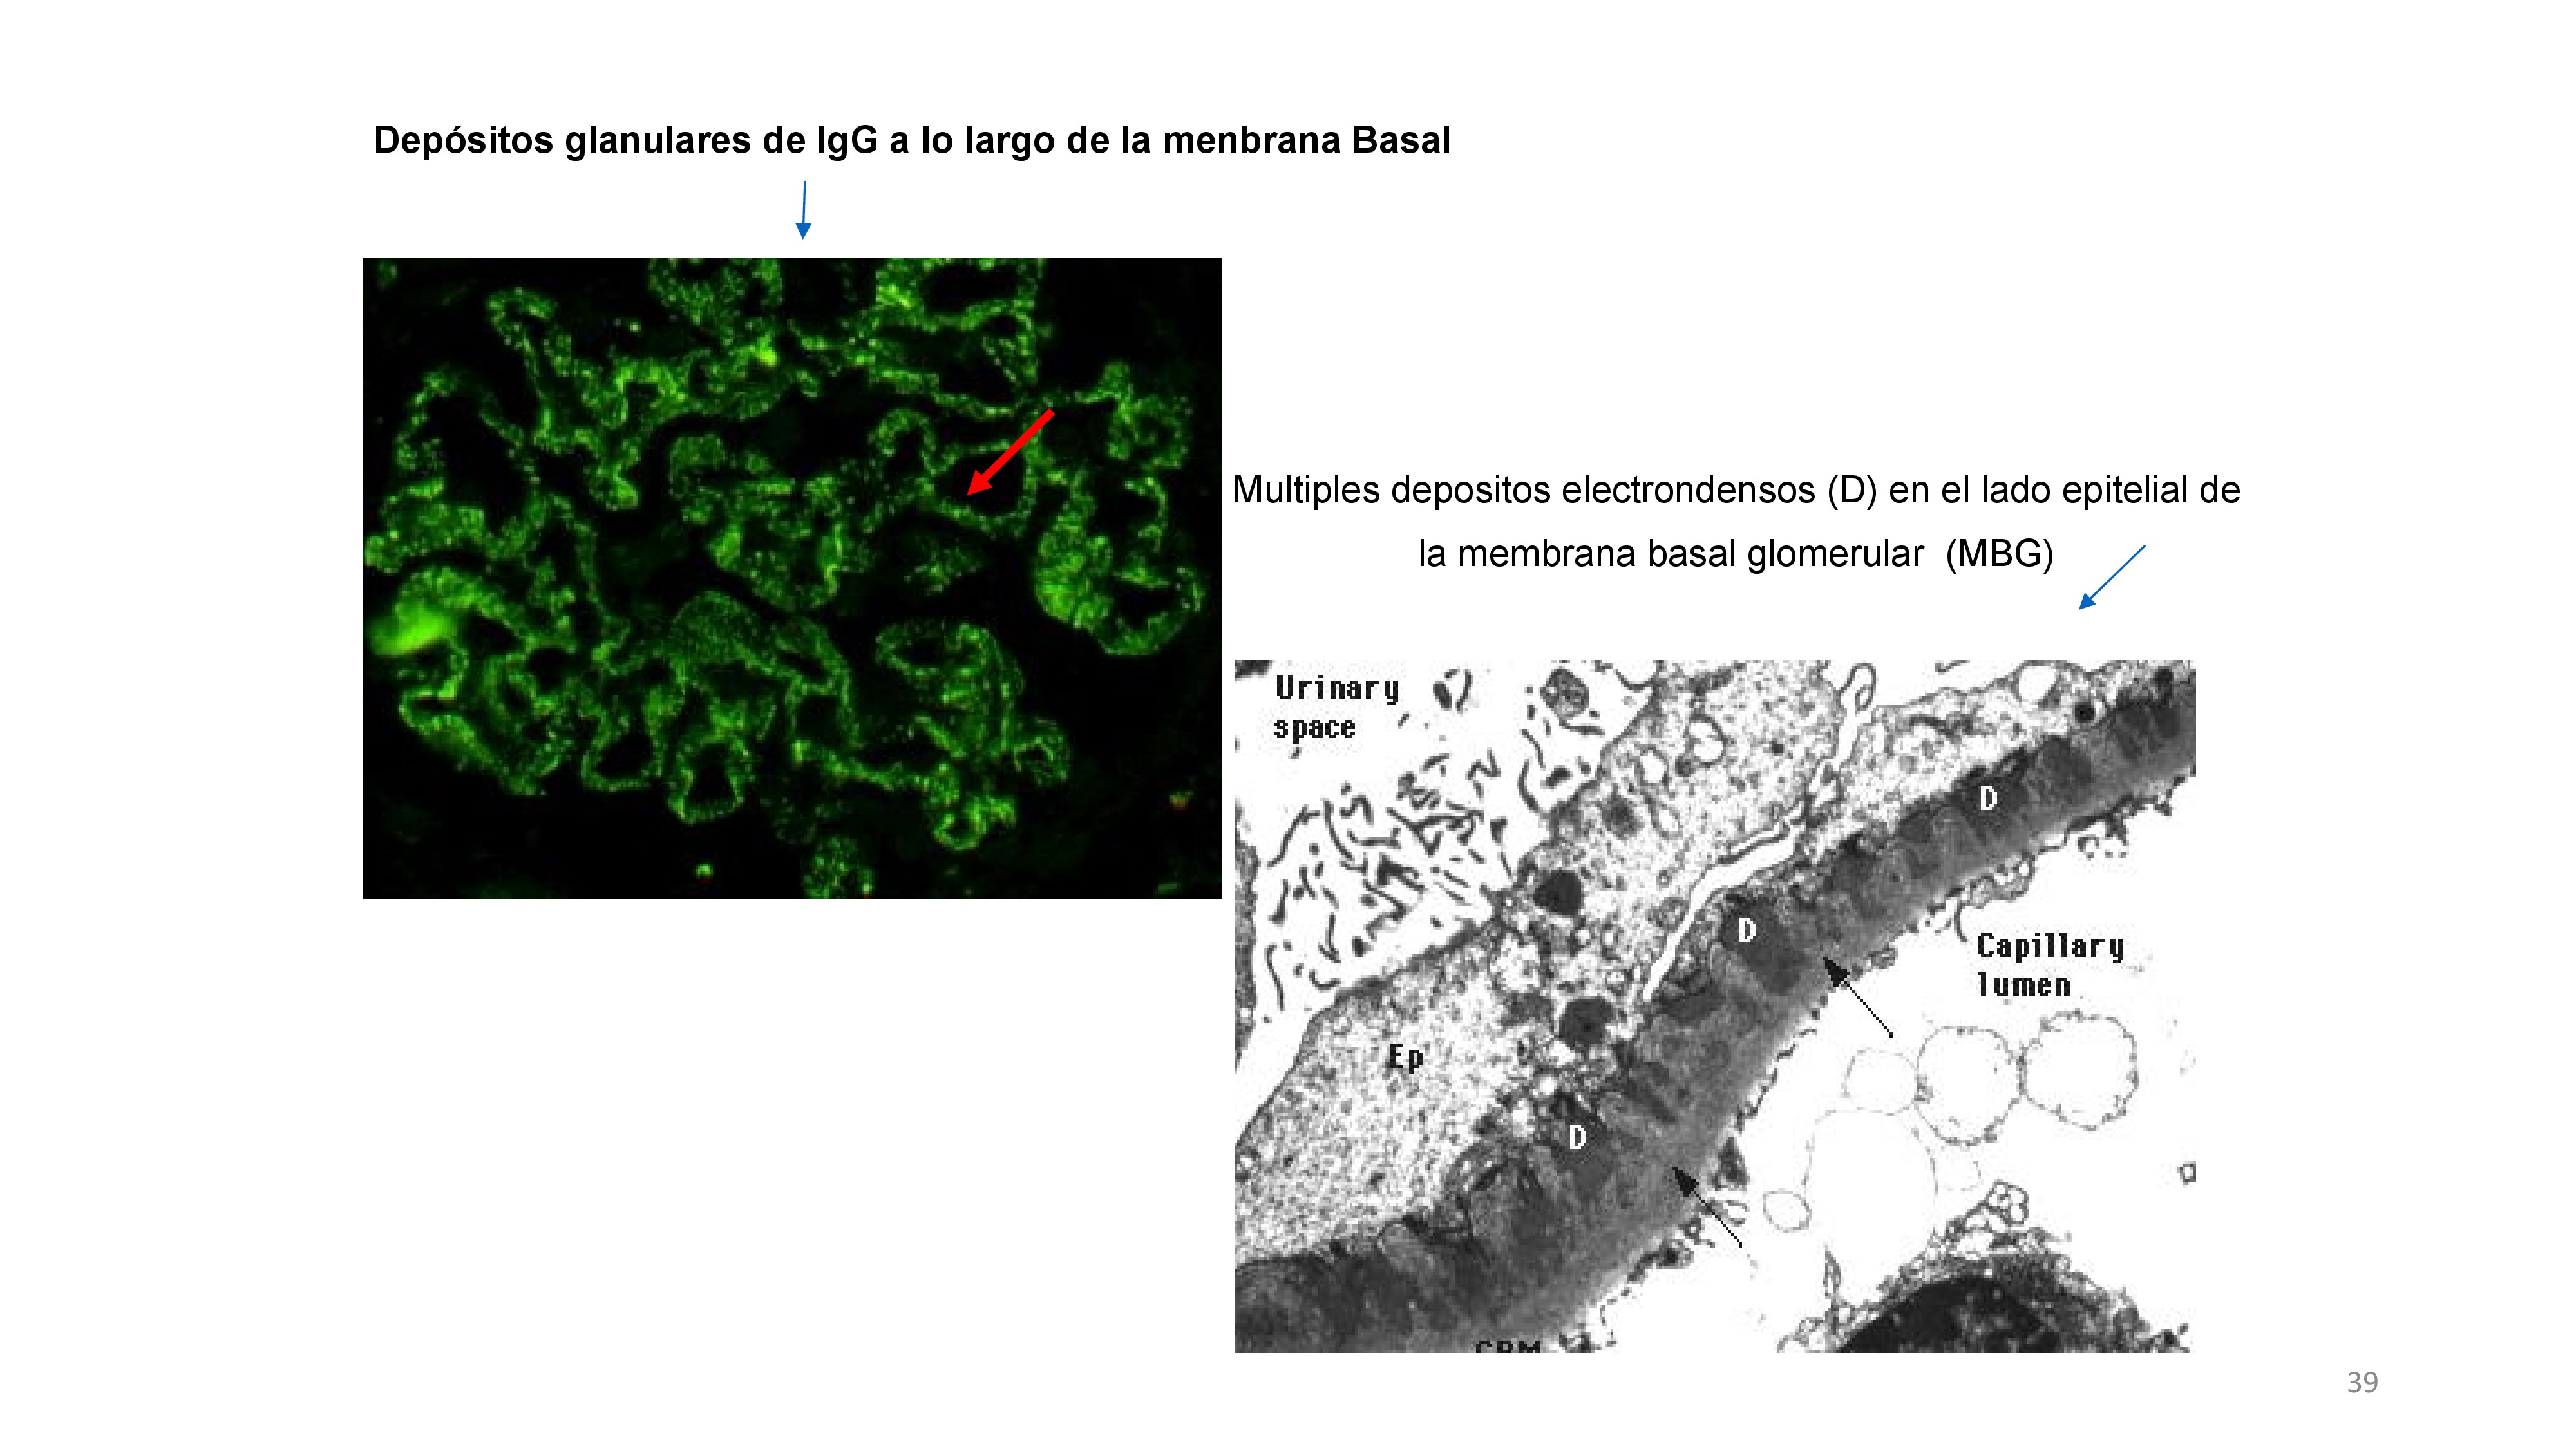 En la inmunofluorescencia se ven los ICC de IgG a lo largo de la membrana basal. En el microscopio electrónico se ven esos depósitos de ICC de IgG de color negro en la zona subepitelial. La membrana basal abraza los depósitos englobándolos e incrementando el grosor de la MB. 